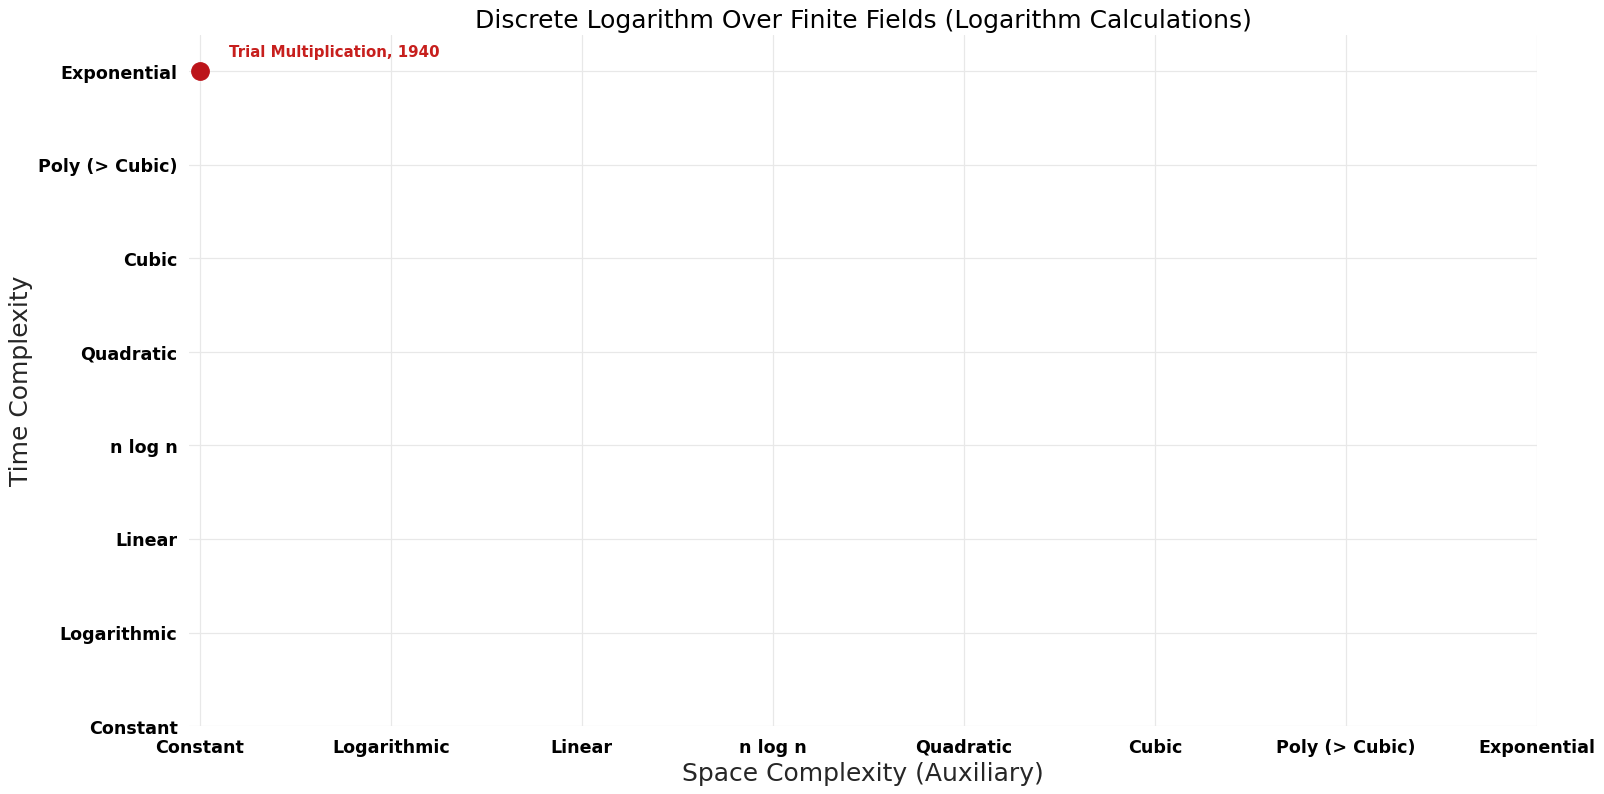 Logarithm Calculations - Discrete Logarithm Over Finite Fields - Pareto Frontier.png